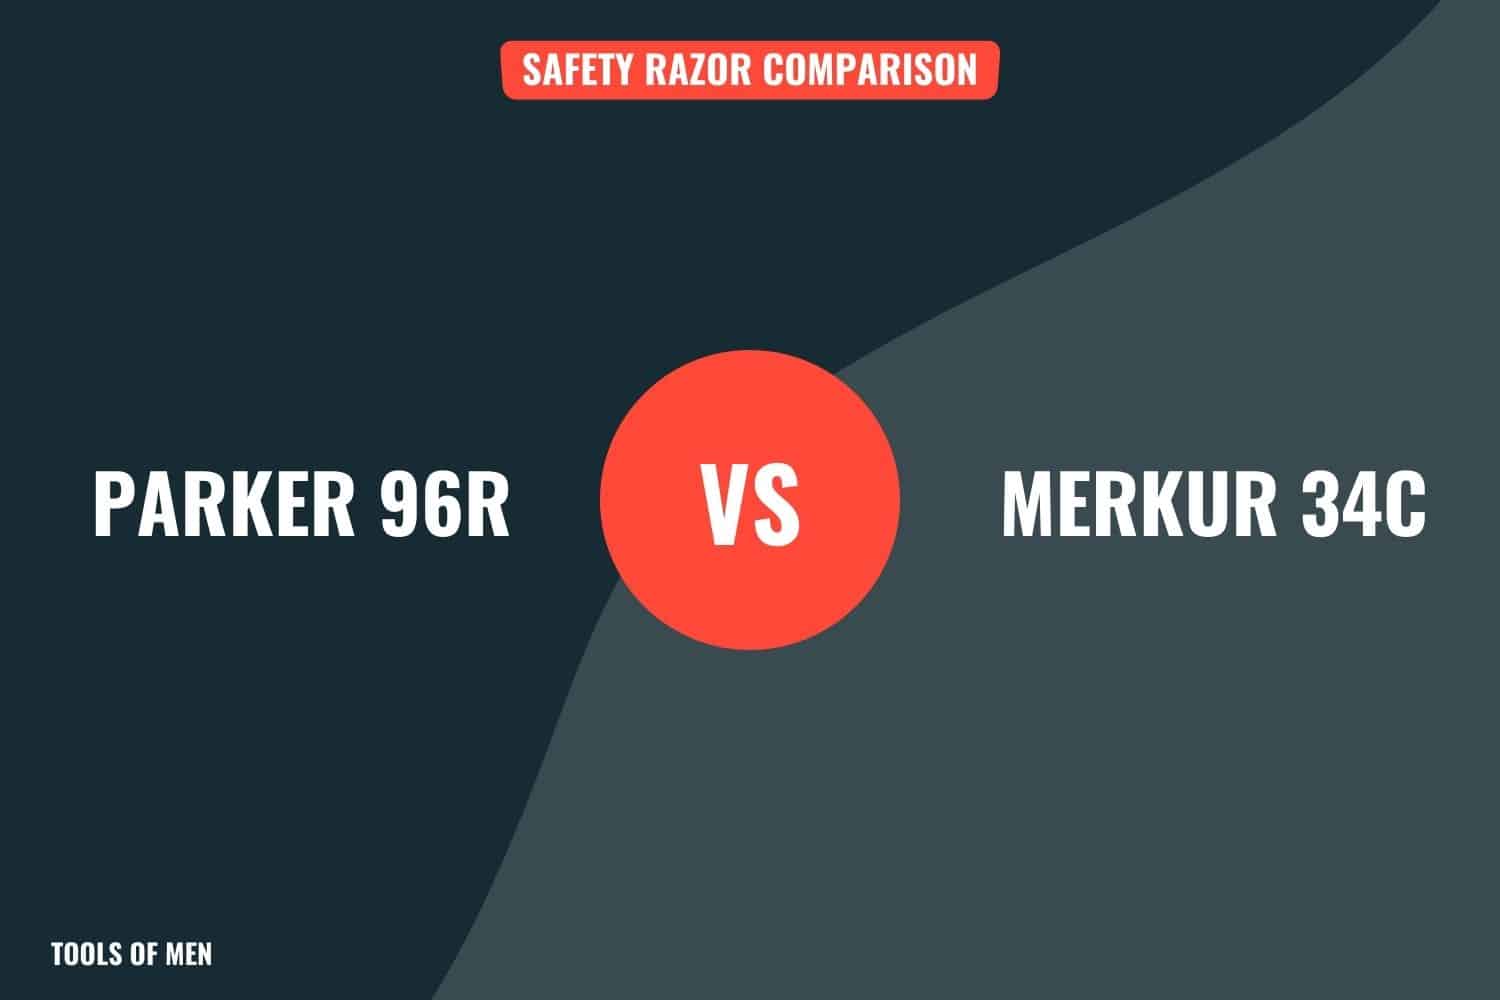 parker 96r vs merkur 34c feature image